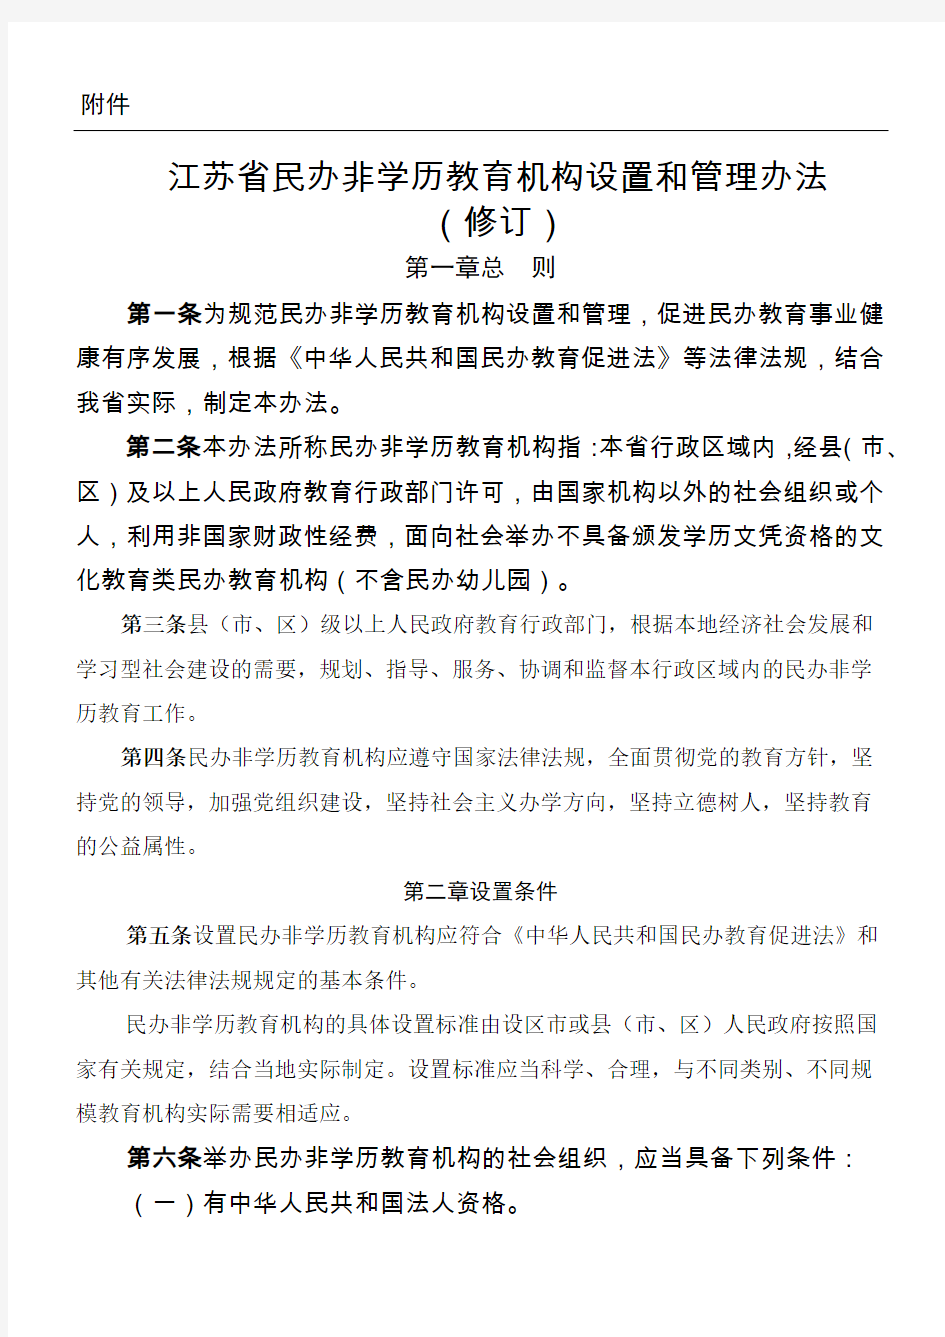 江苏省民办非学历教育机构设置和管理办法(修订)